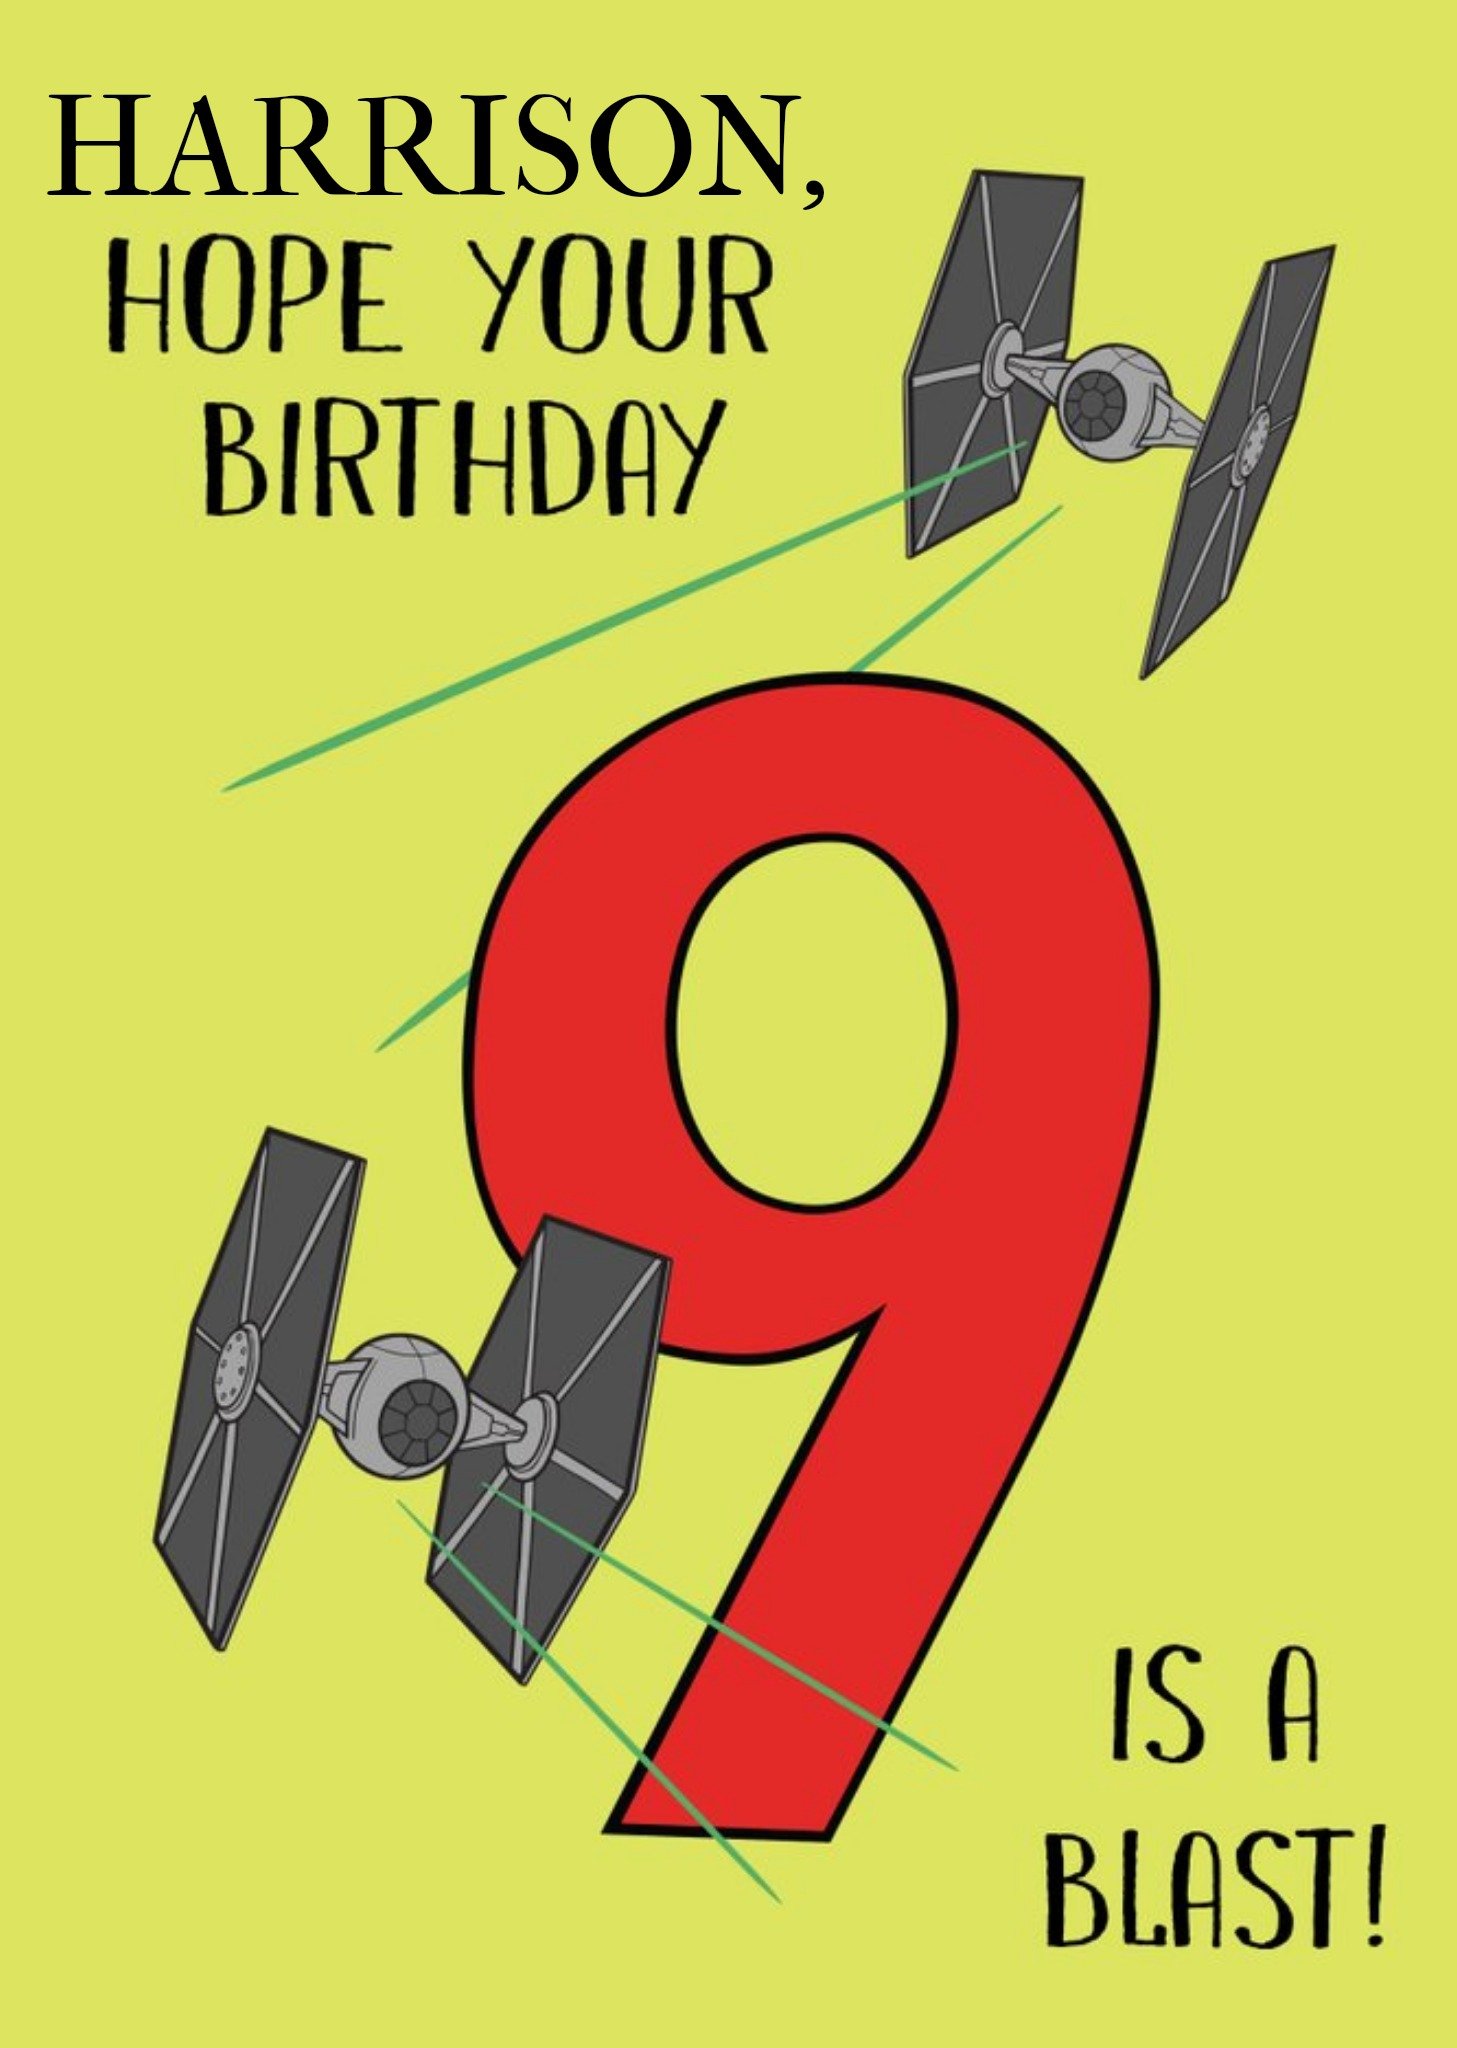 Disney Star Wars Hope Your Birthday Is A Blast Card Ecard